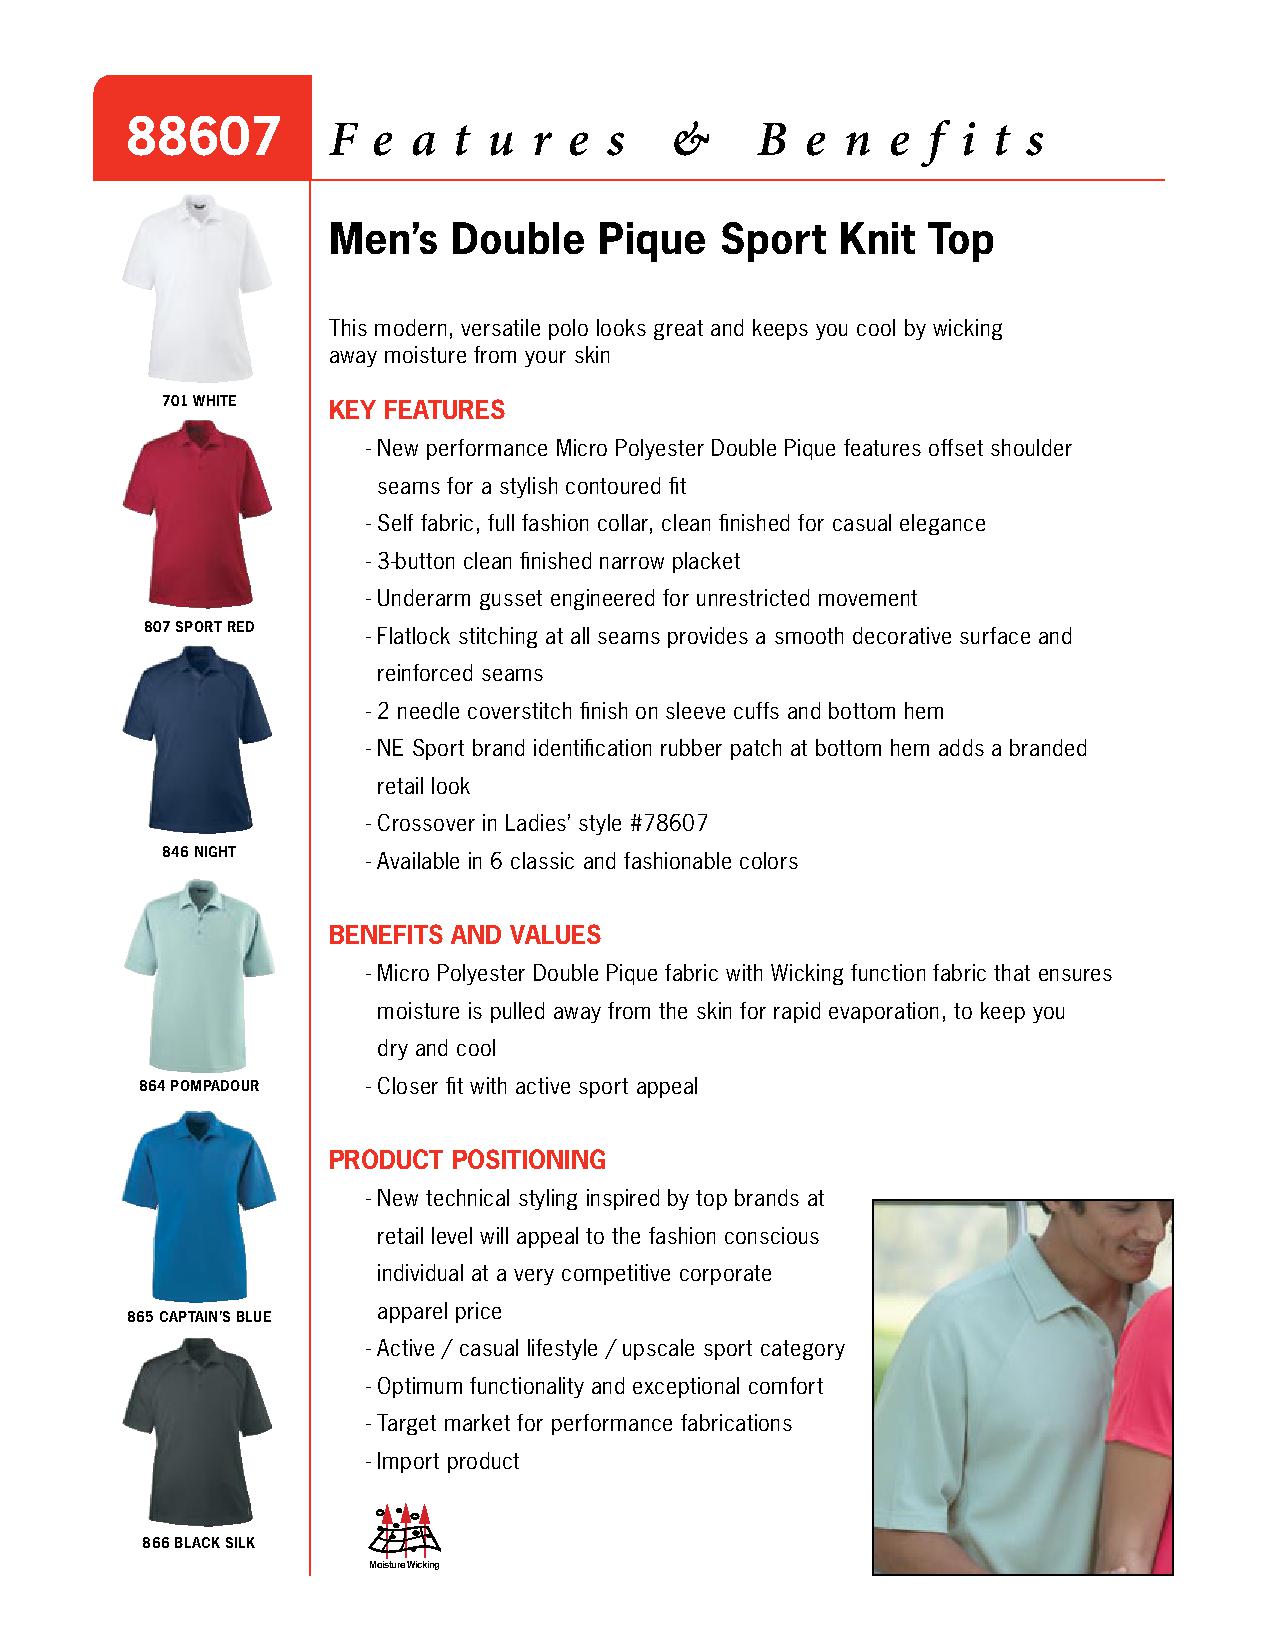 Ash City Pique 88607 - Men's Double Pique Knit Top